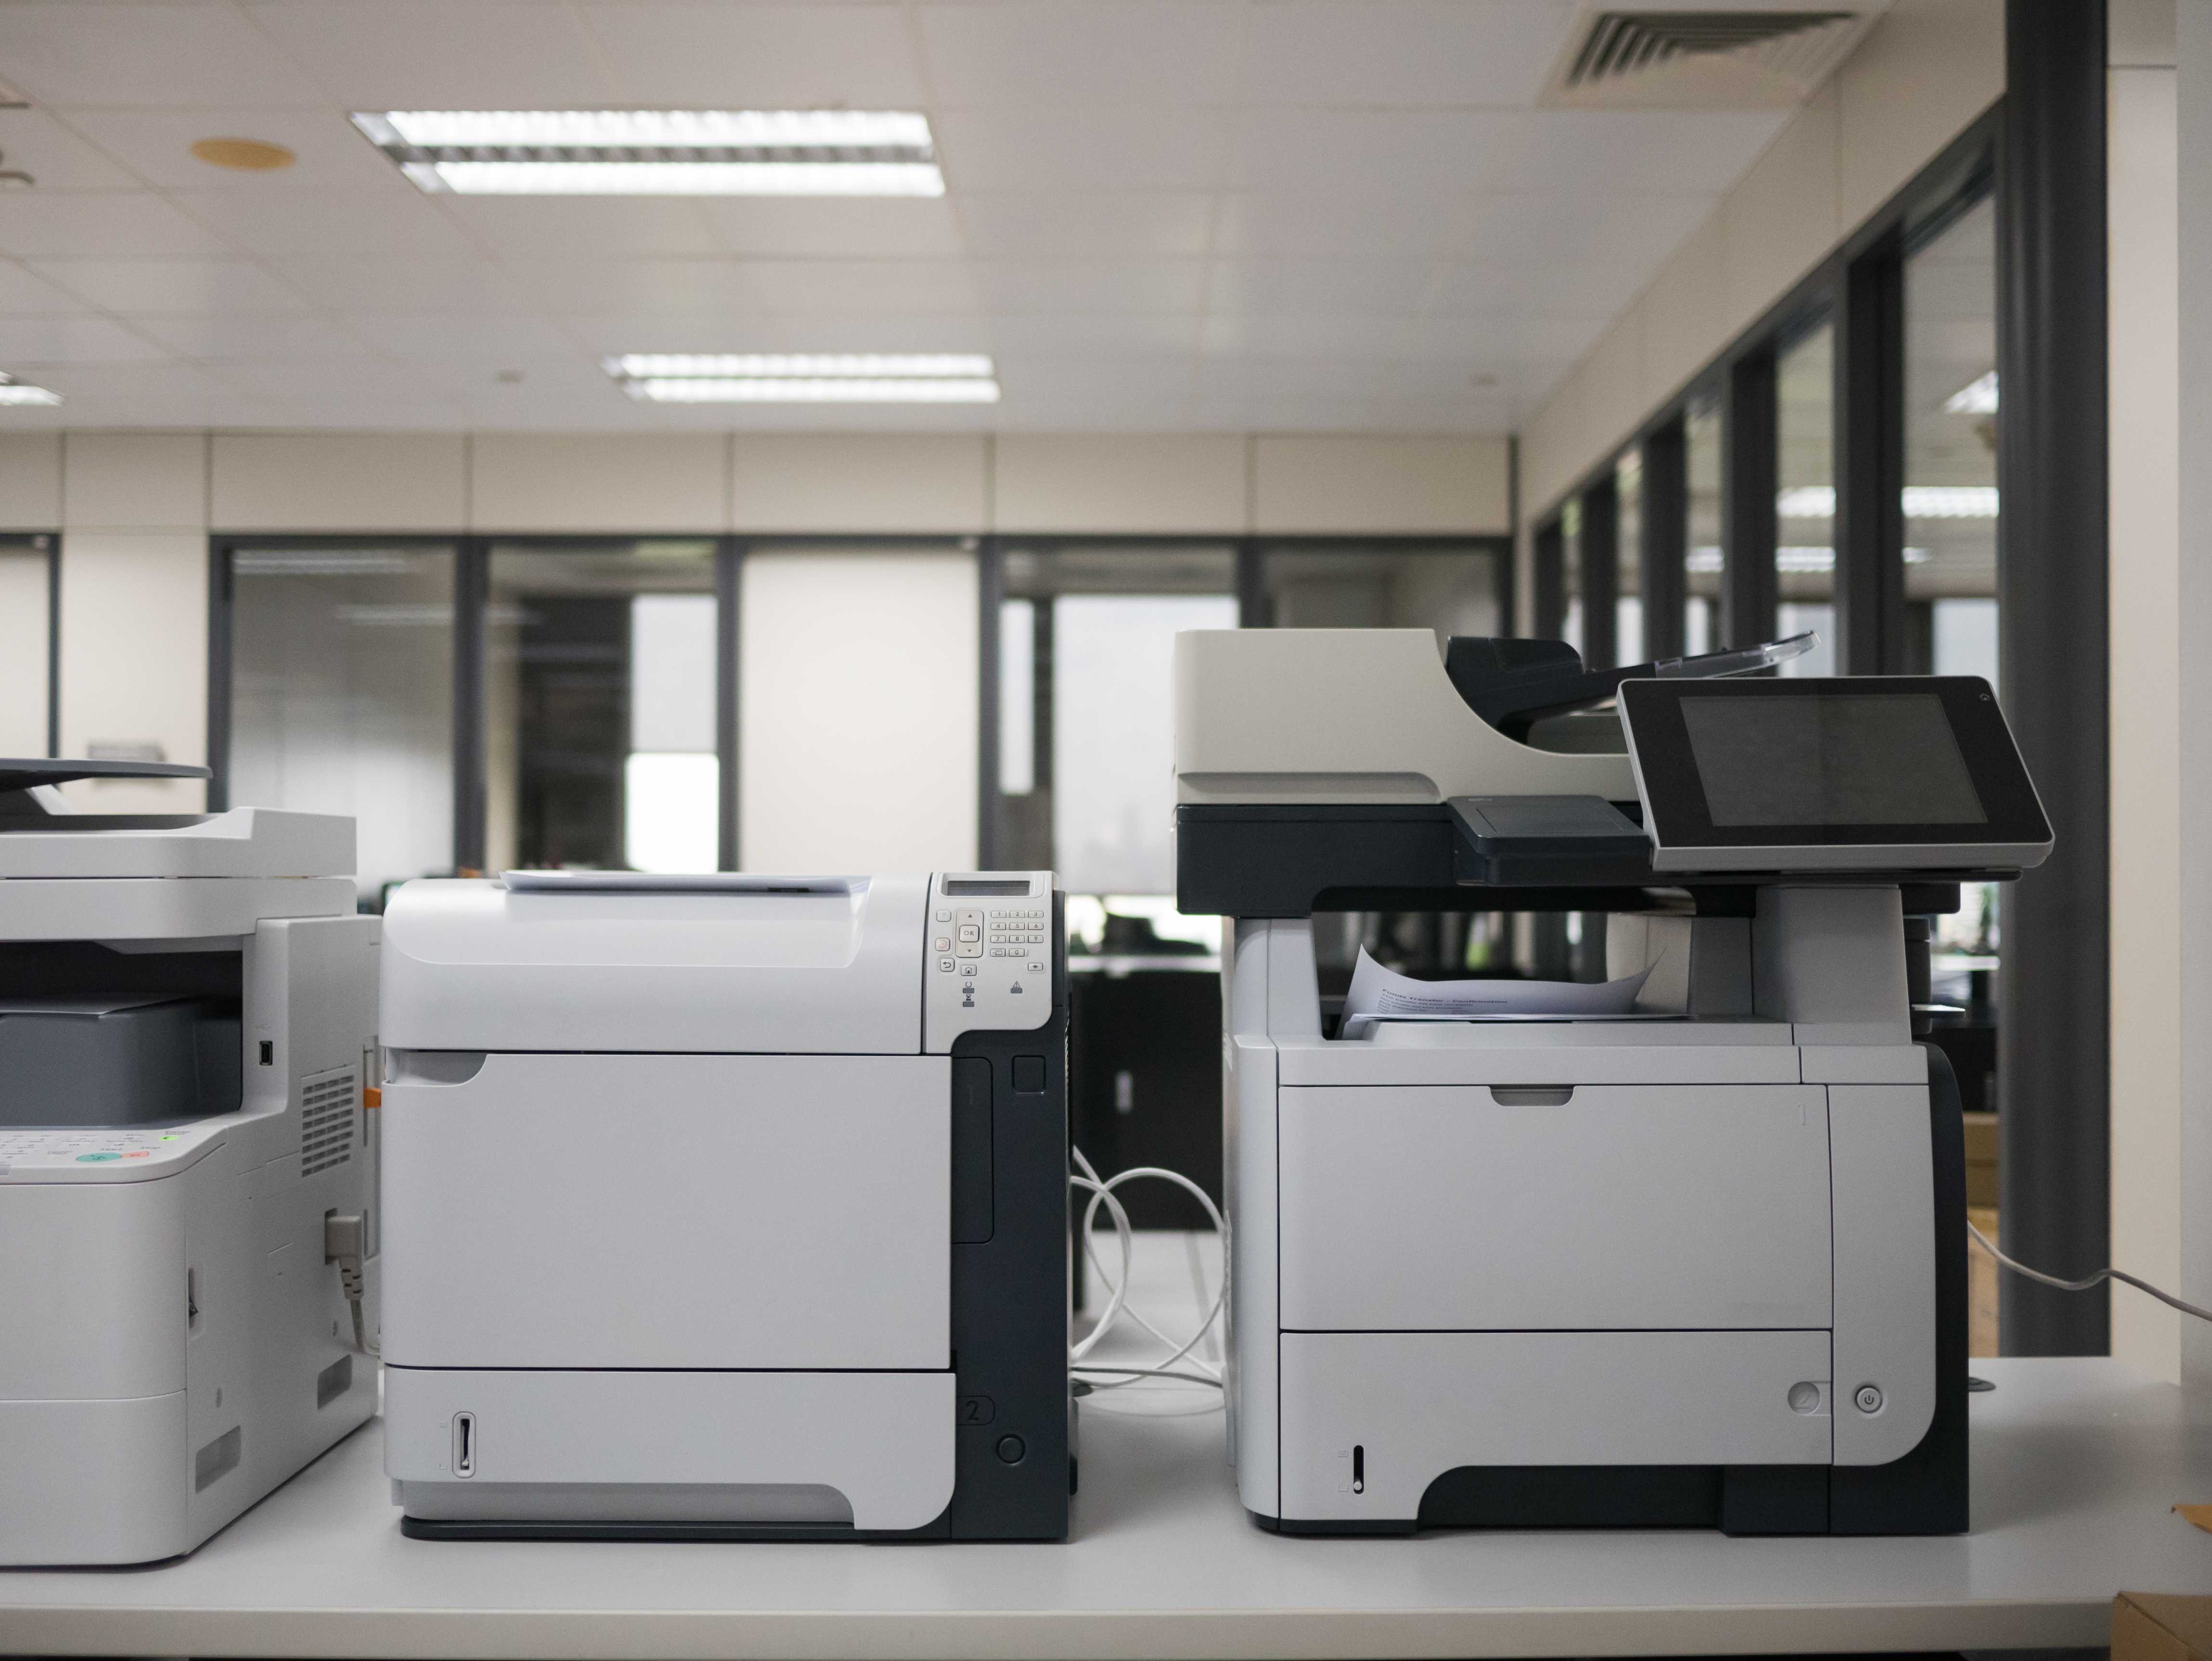 Printing devices. Принтер. Принтер в офисе. Принтер большой для офиса. Принтер МФУ.